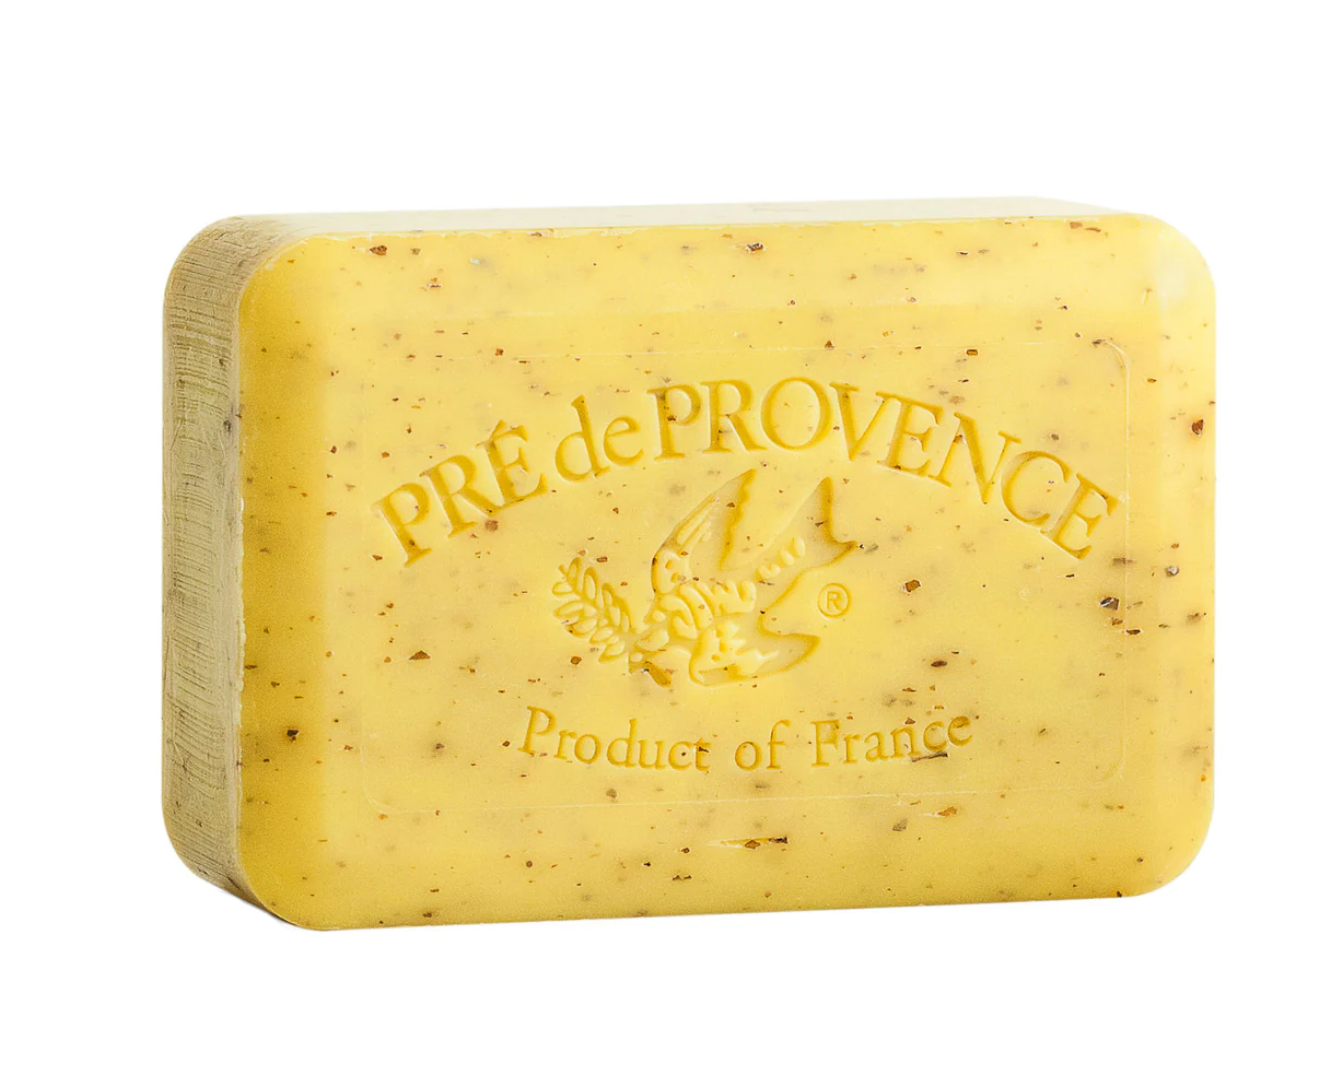 Lemongrass soap bar by Pré de Provence